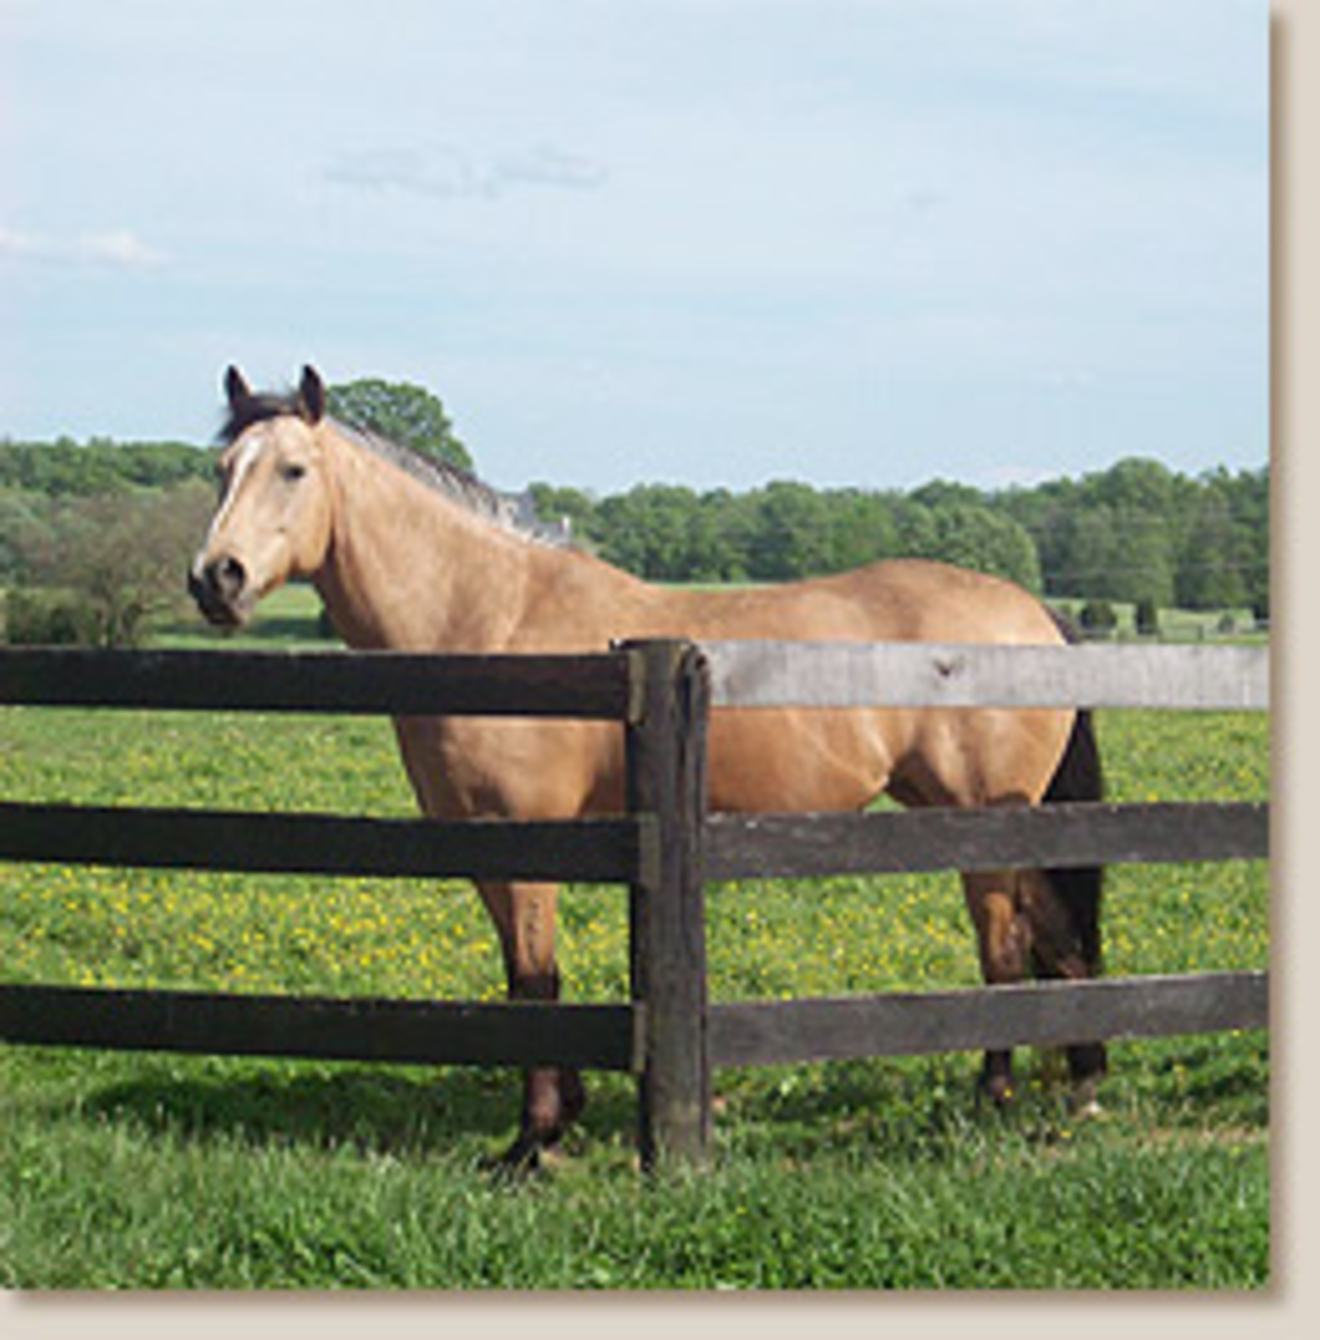 Veilige afsluiting voor paarden vrijgesteld van vergunning